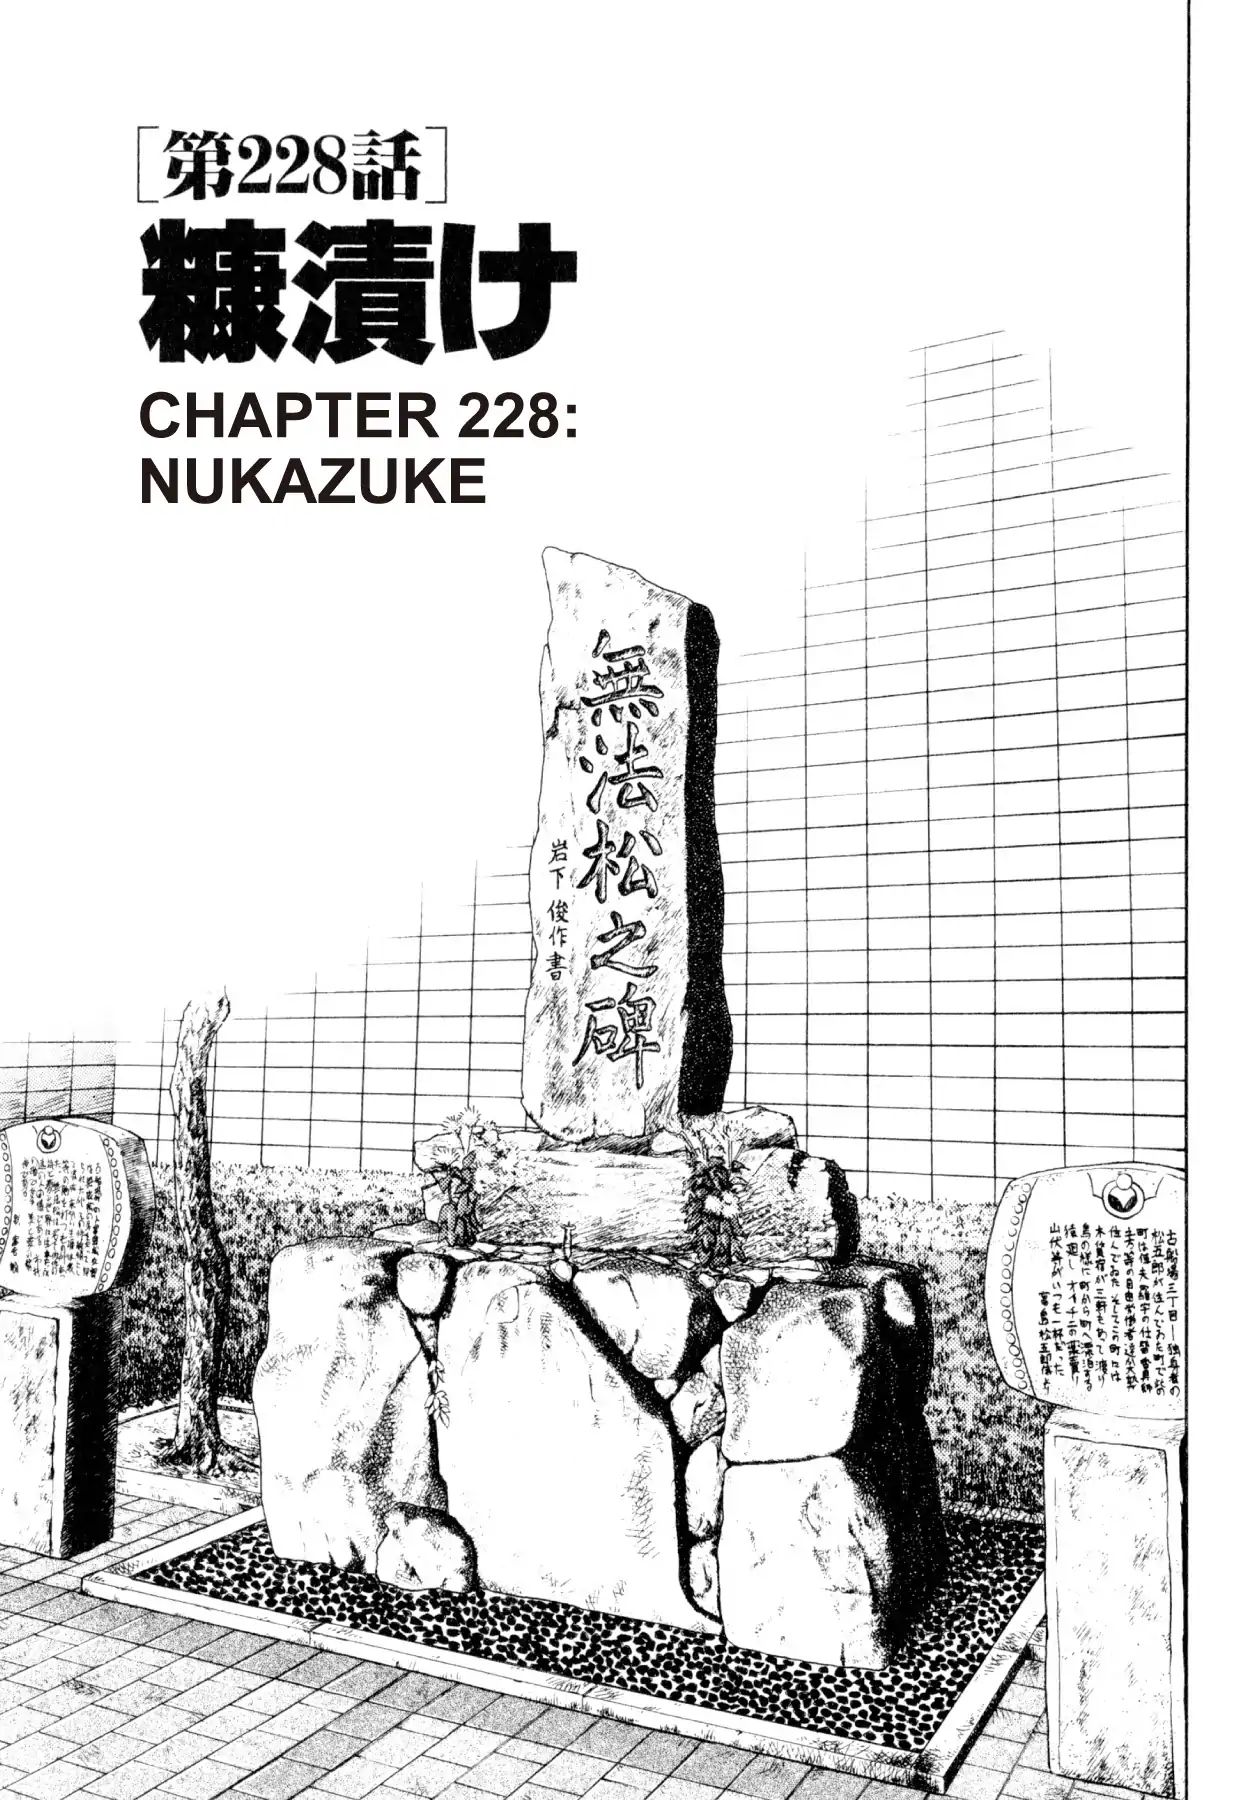 Shoku King VOL.25 CHAPTER 228: NUKAZUKE